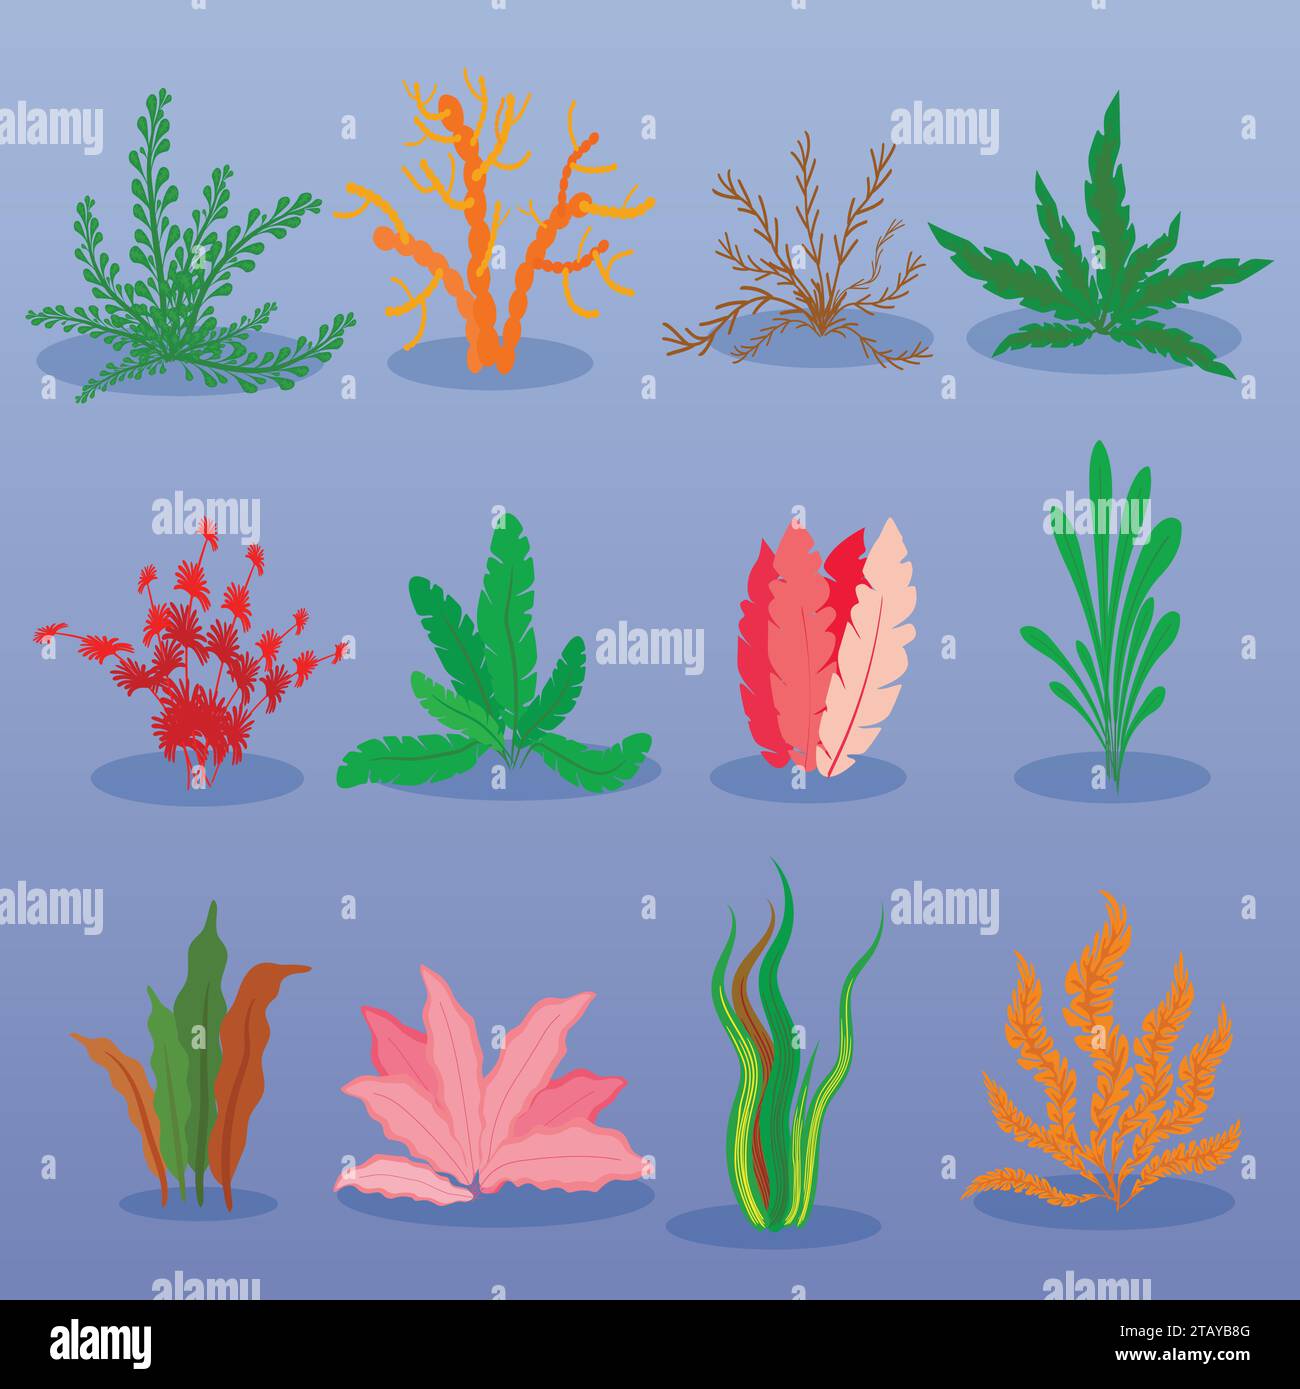 Unterwasser-Algen-Vektor auf blauem Hintergrund gesetzt. Meerespflanzen und Meeresalgen. Sammlung von Arten von Aquarienalgen. Vektorabbildung Stock Vektor